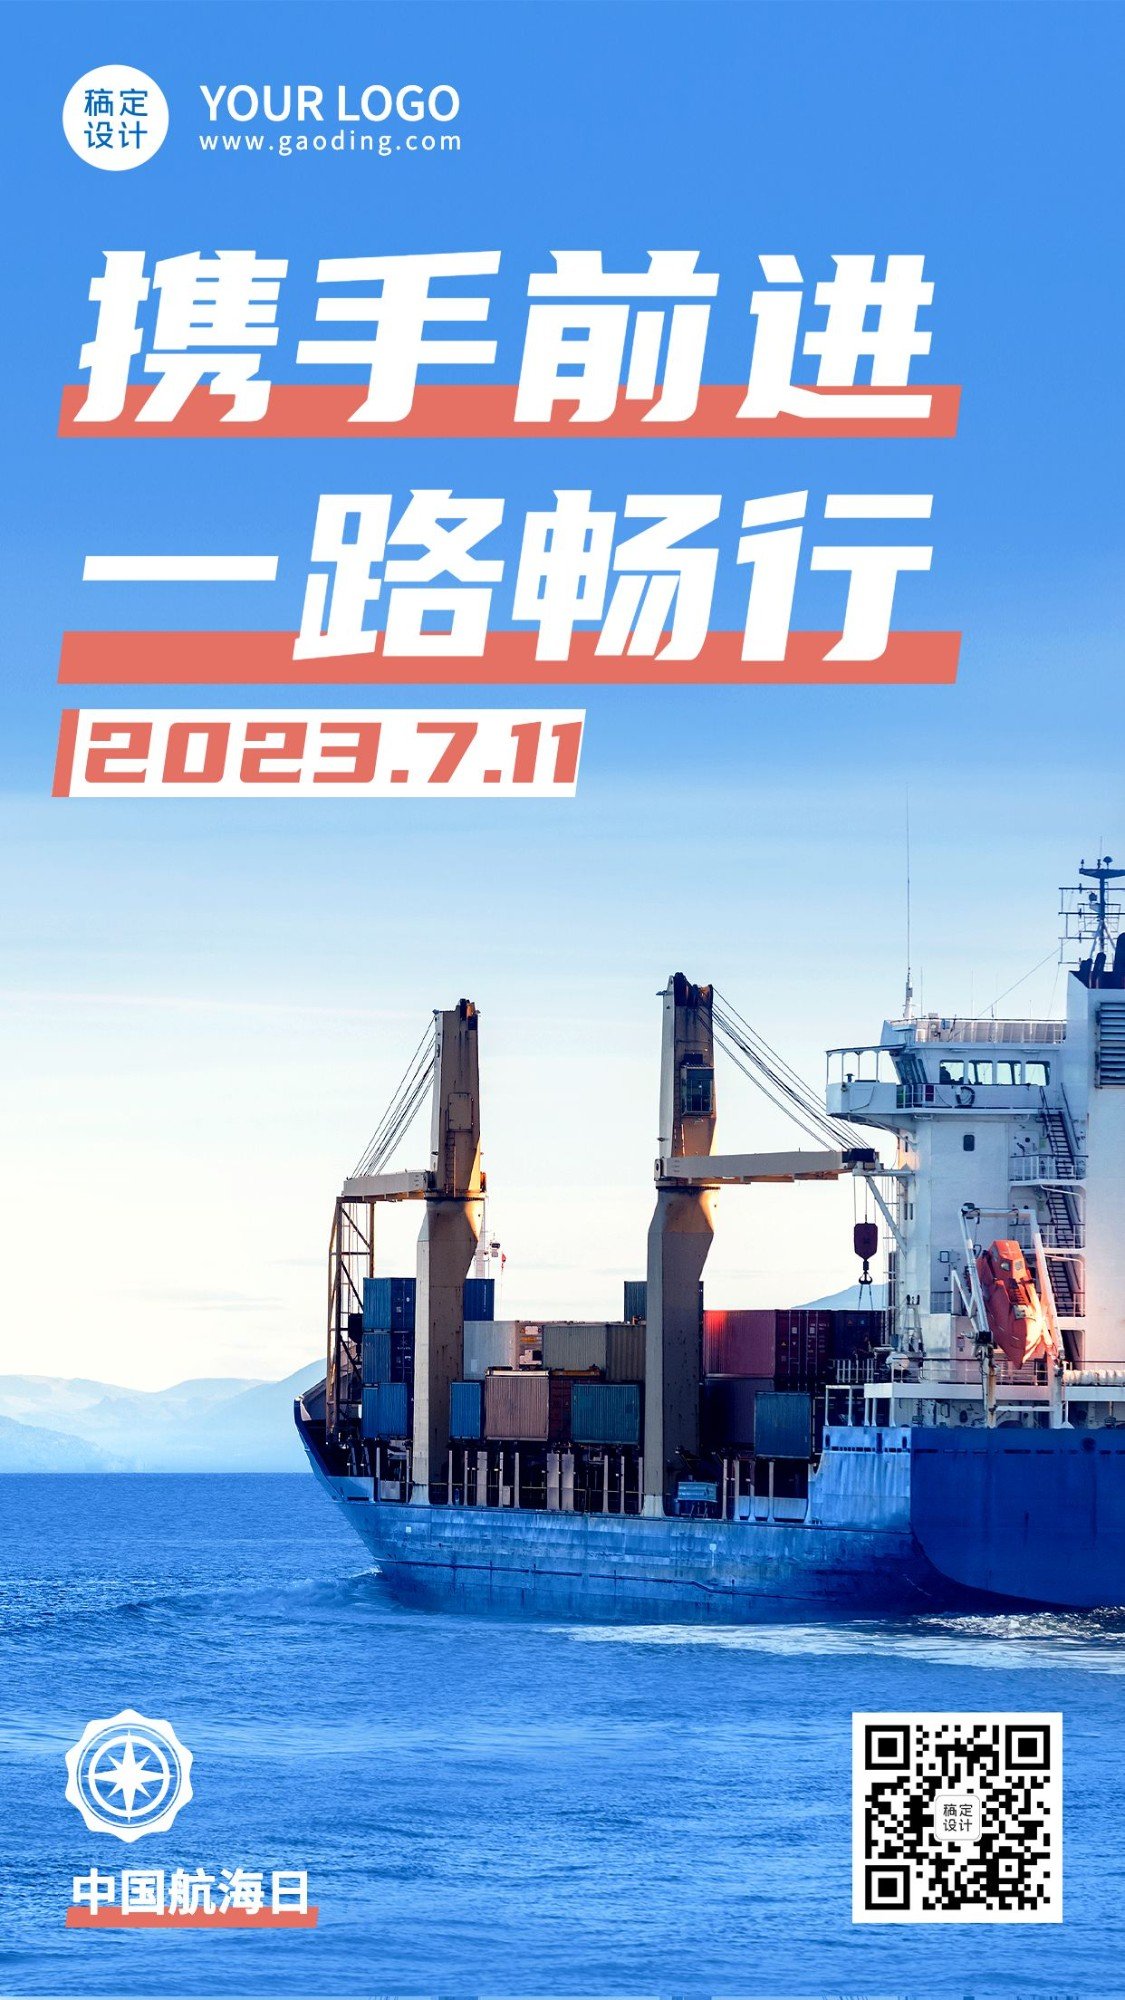 中国航海日贸易海洋手机海报预览效果